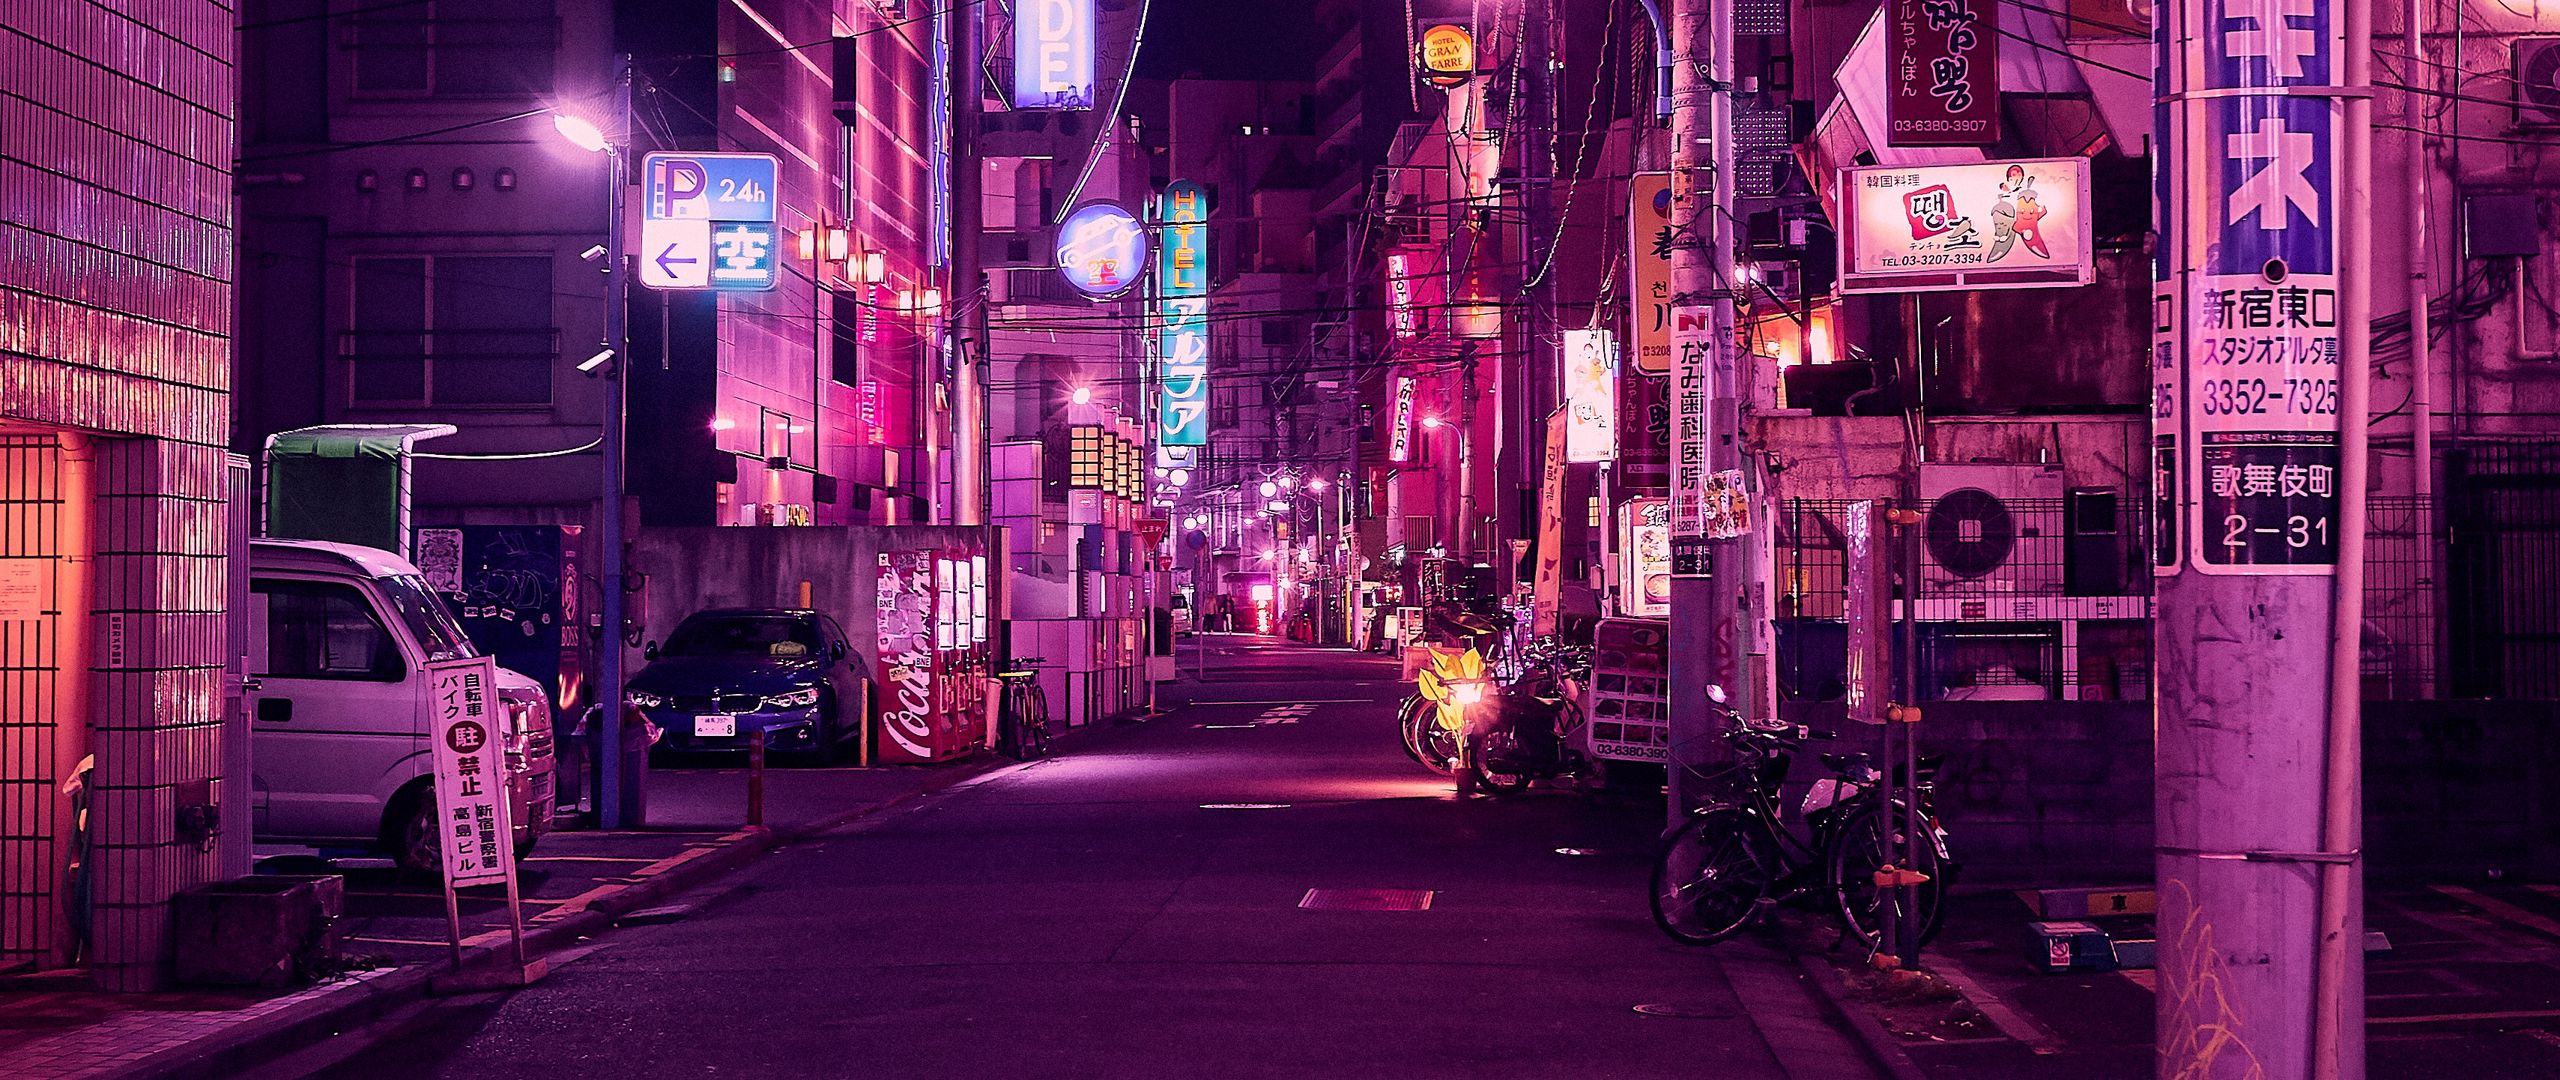 Wallpaper Street Neon Night City Backlight